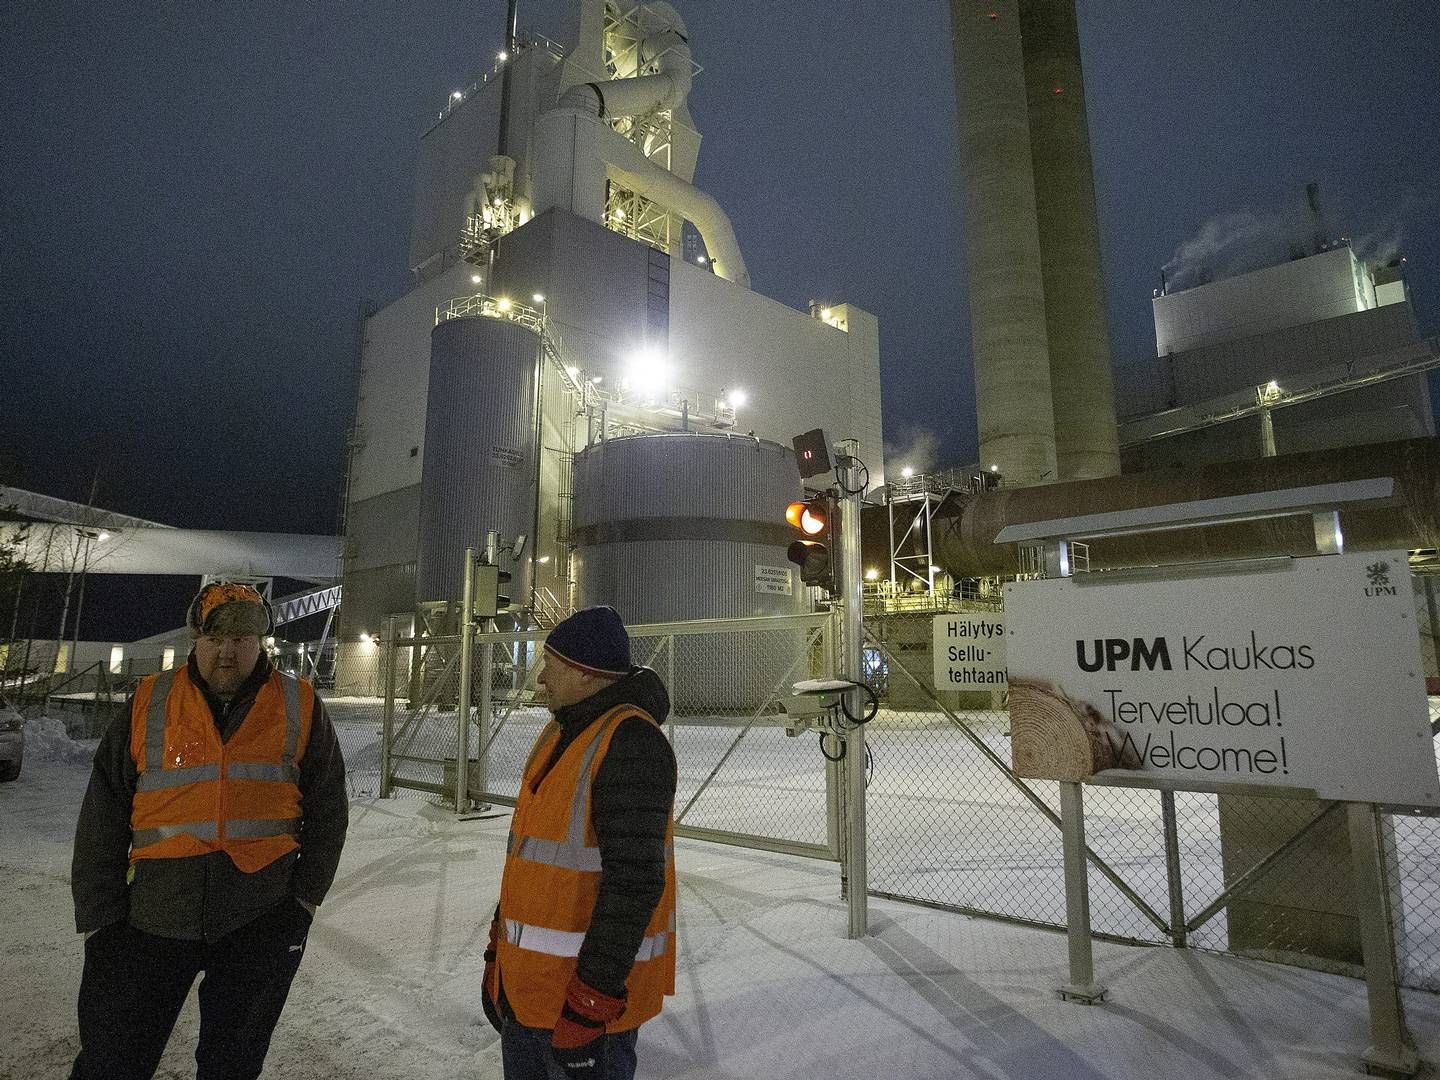 Den finske papirproducent UPM blev tidligere på året omdrejningspunkt for en strejke, som har været med til at lægge pres på papirleverancer. | Foto: Lehtikuva/Reuters/Ritzau Scanpix